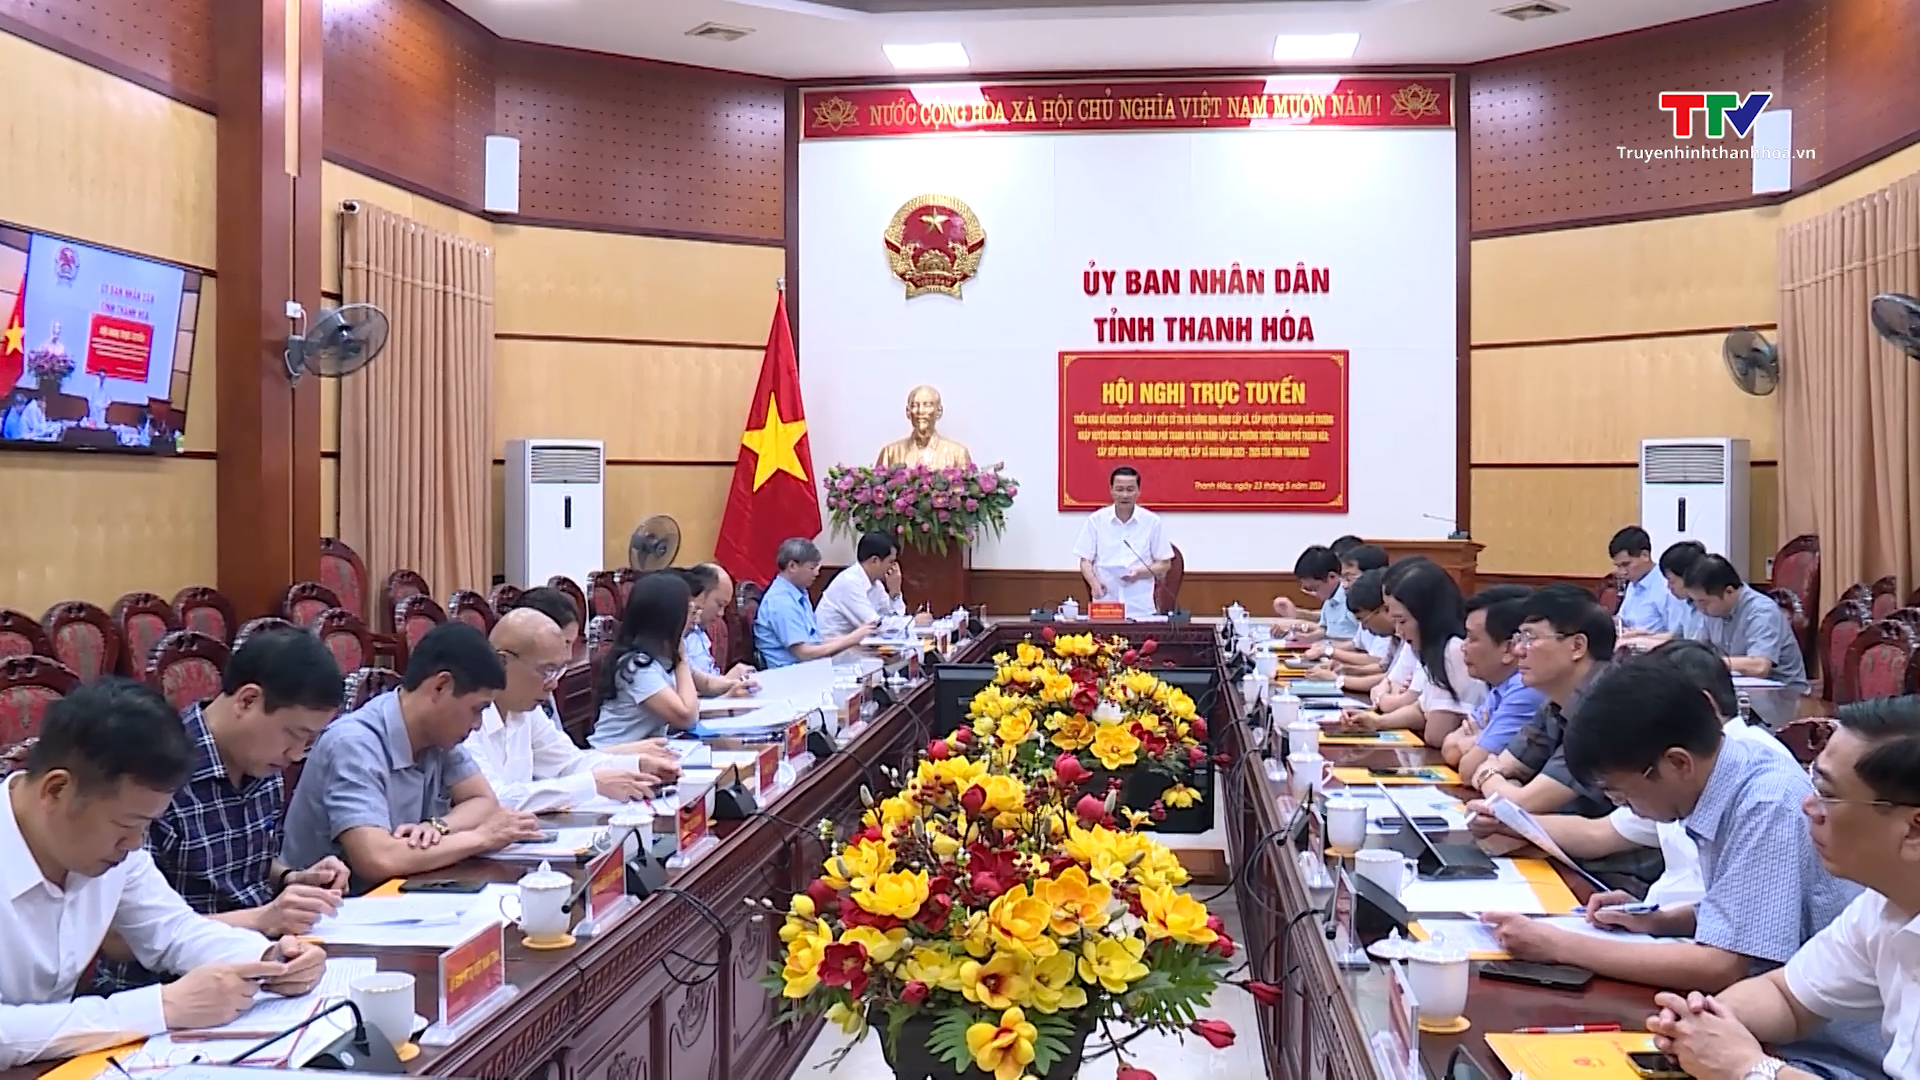 Triển khai kế hoạch tổ chức lấy ý kiến cử tri về chủ trương nhập huyện Đông Sơn vào thành phố Thanh Hóa và sắp xếp đơn vị hành chính trên địa bàn tỉnh- Ảnh 3.